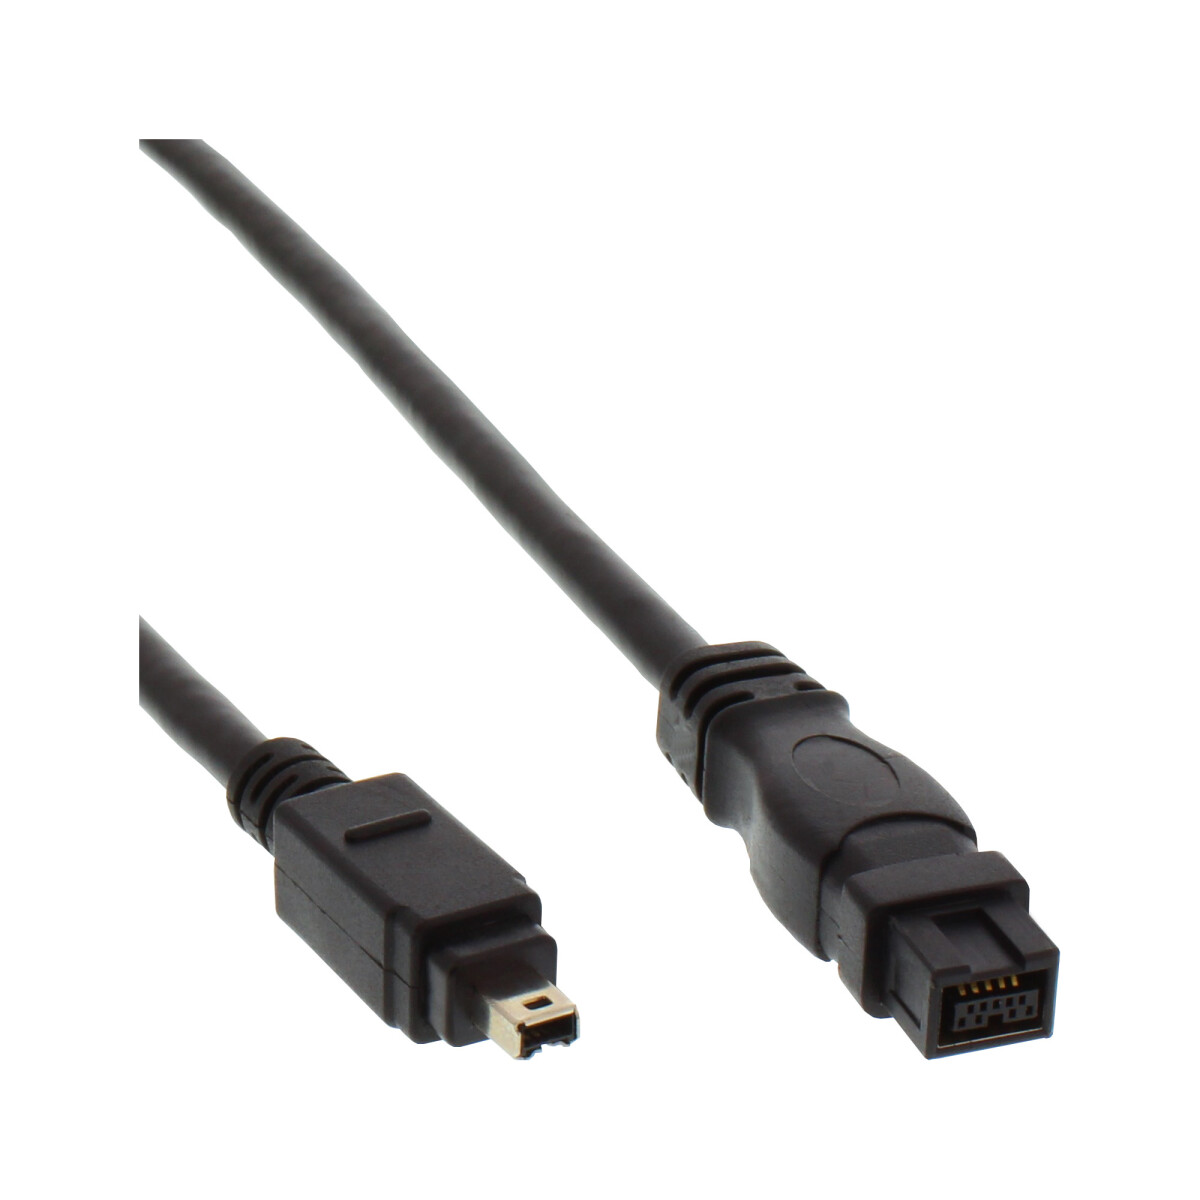 InLine® FireWire Kabel, IEEE1394 4pol Stecker zu 9pol...